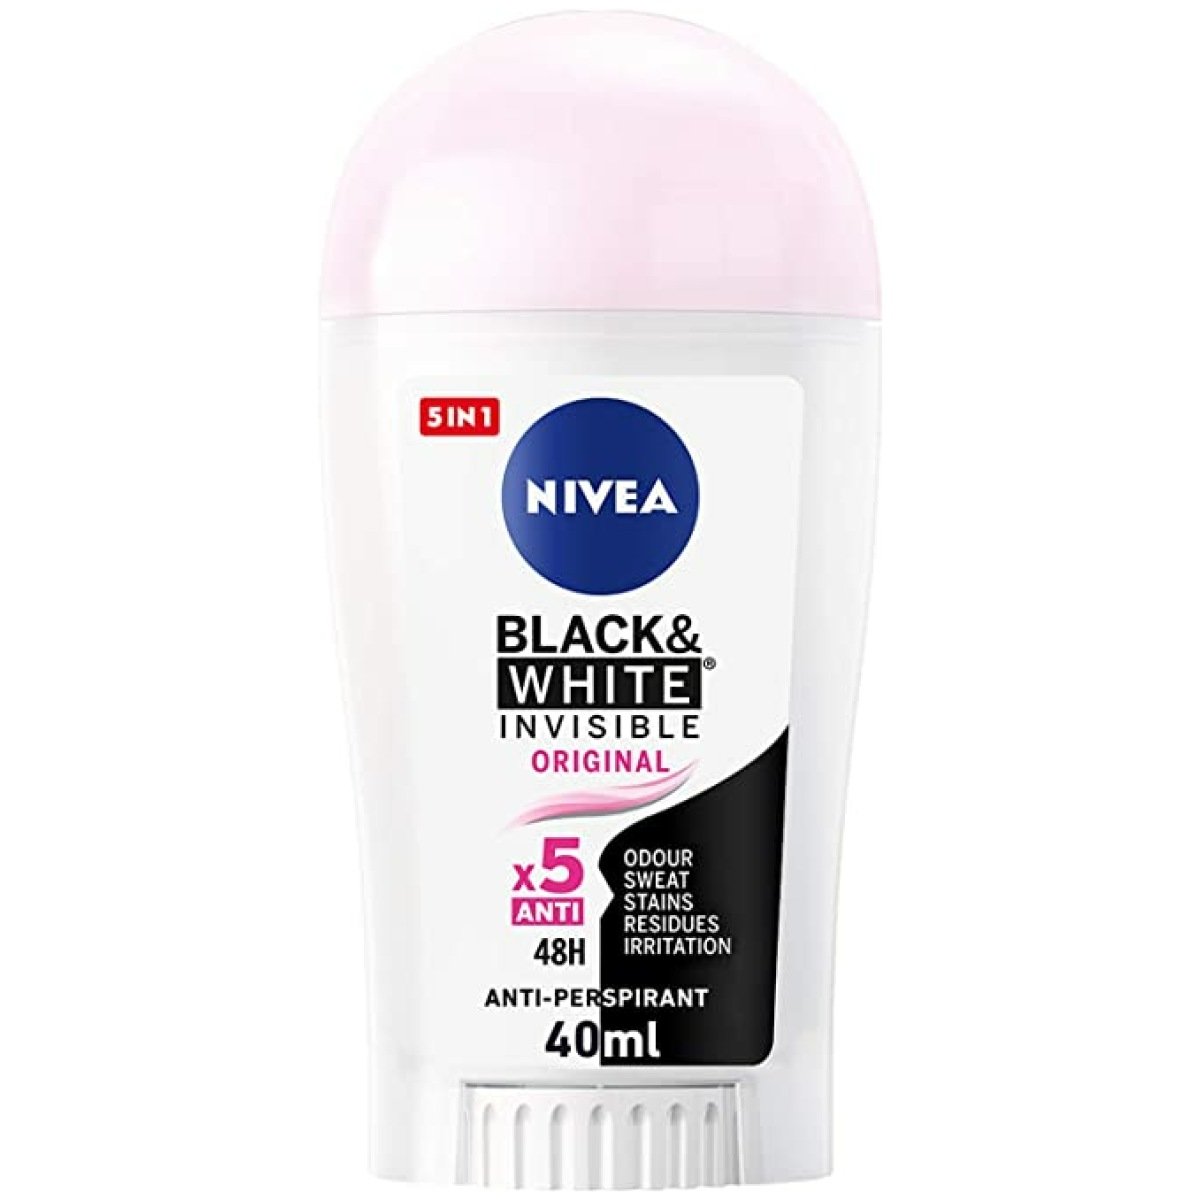 Nivea Black And White Invisible Original Deodorant Stick For Women 40Ml